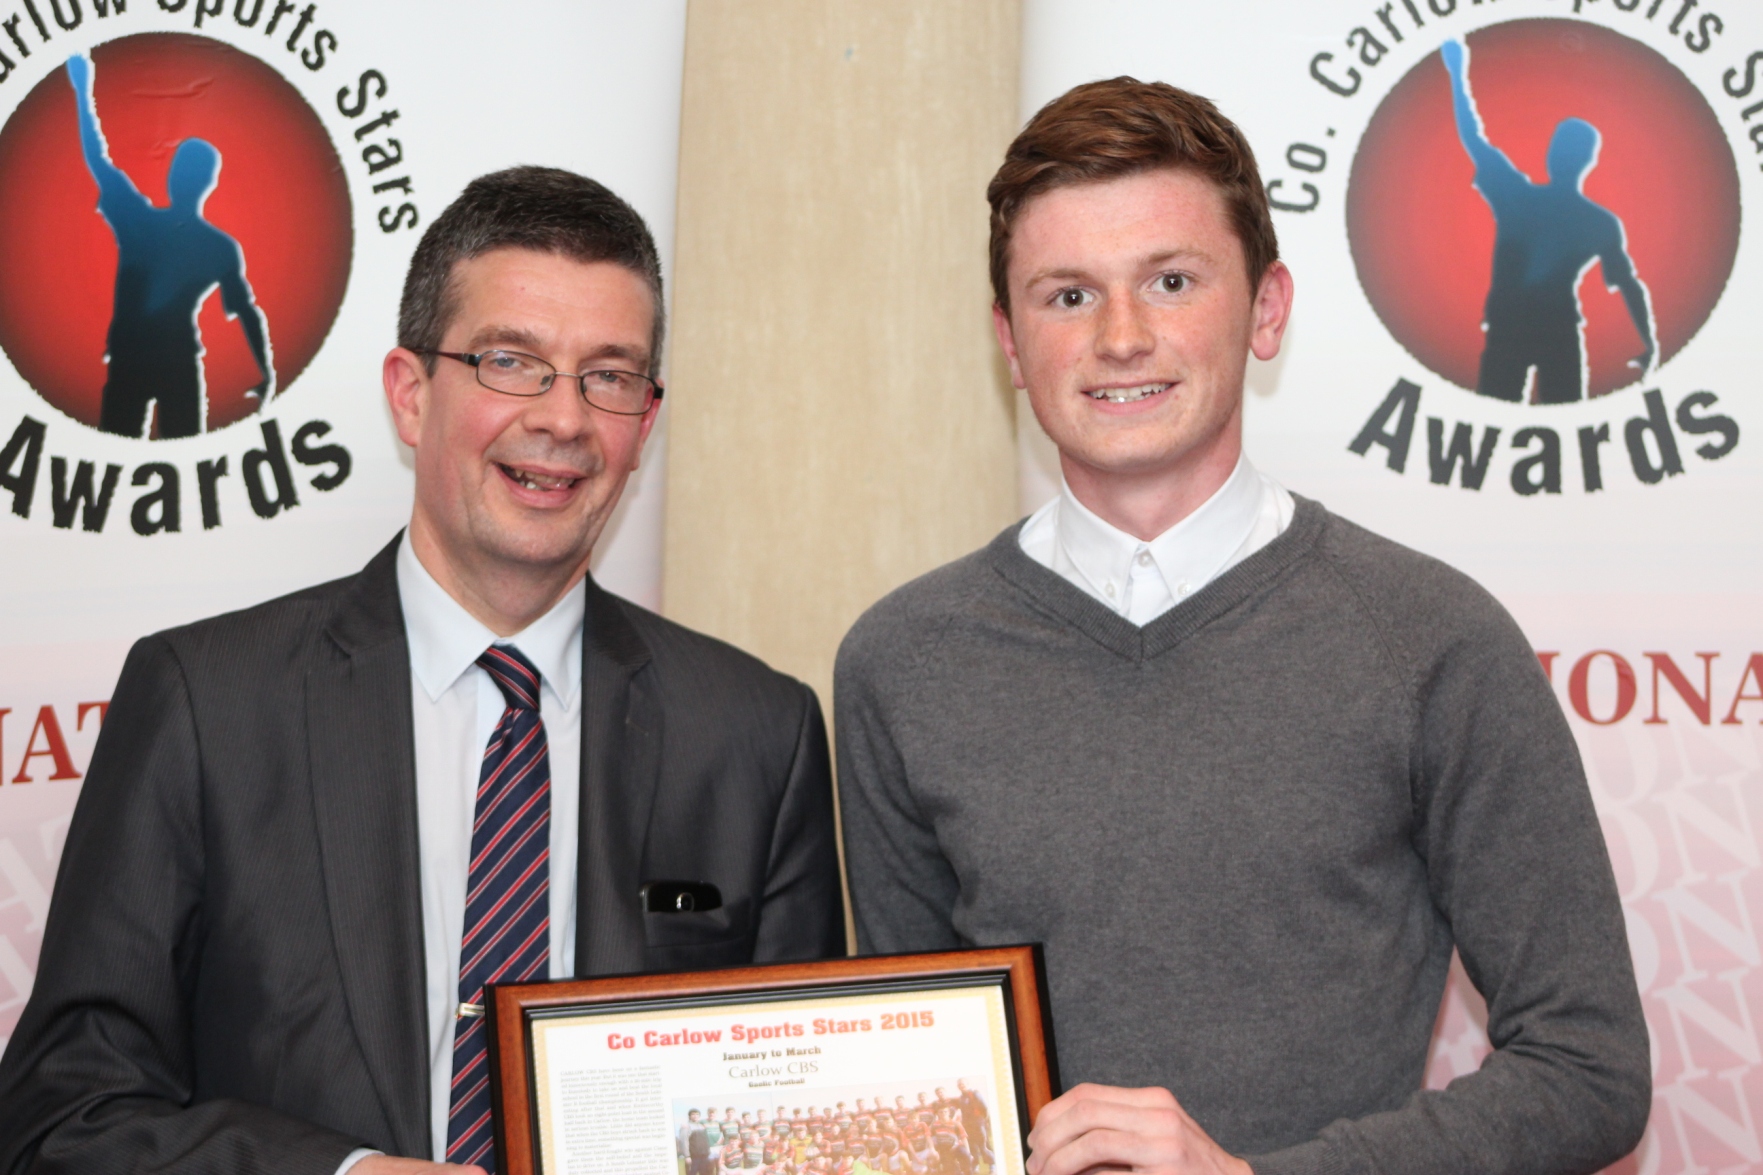 Carlow GAA Stars Rewarded at Co Carlow Sports Stars Awards